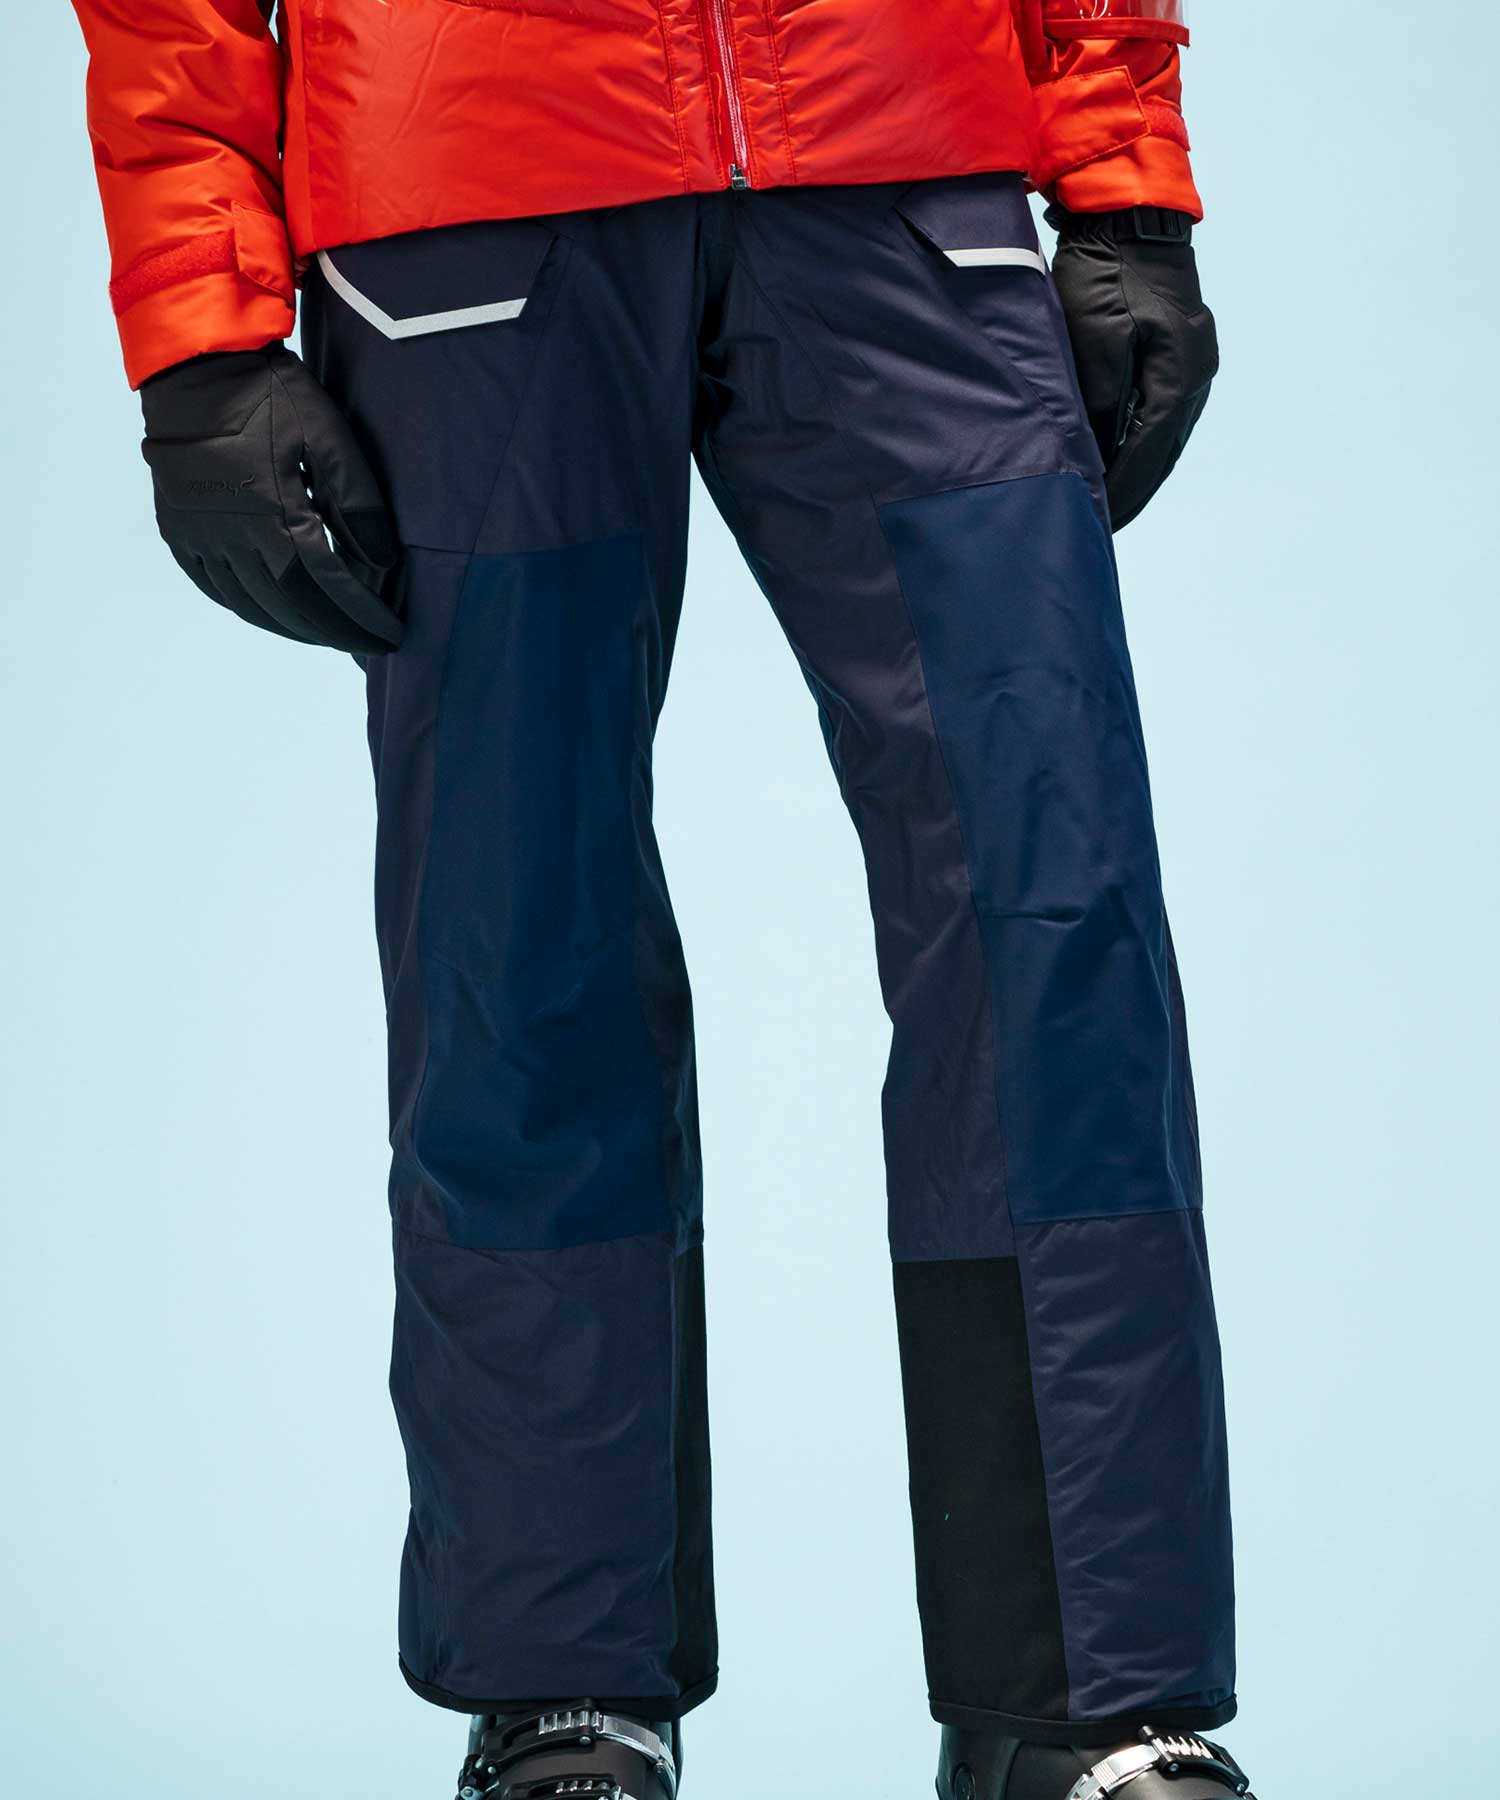 スキーphenix ski pants